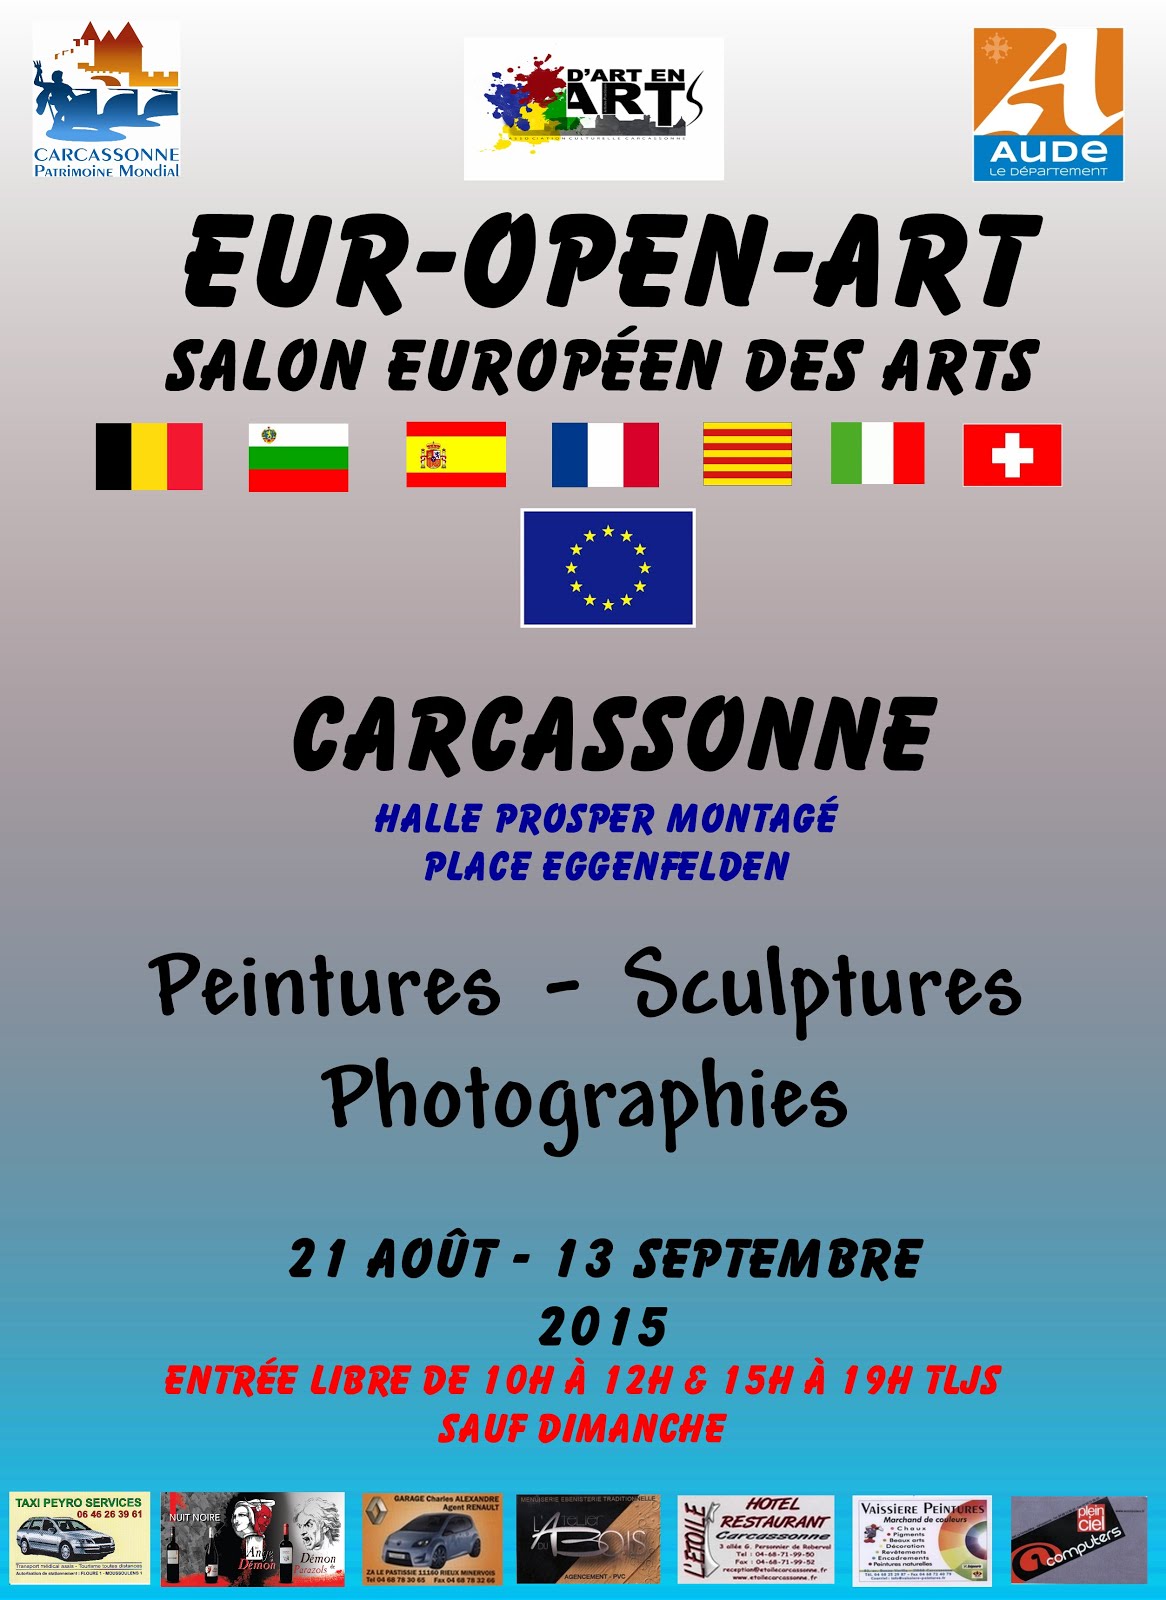 Eur-open-art